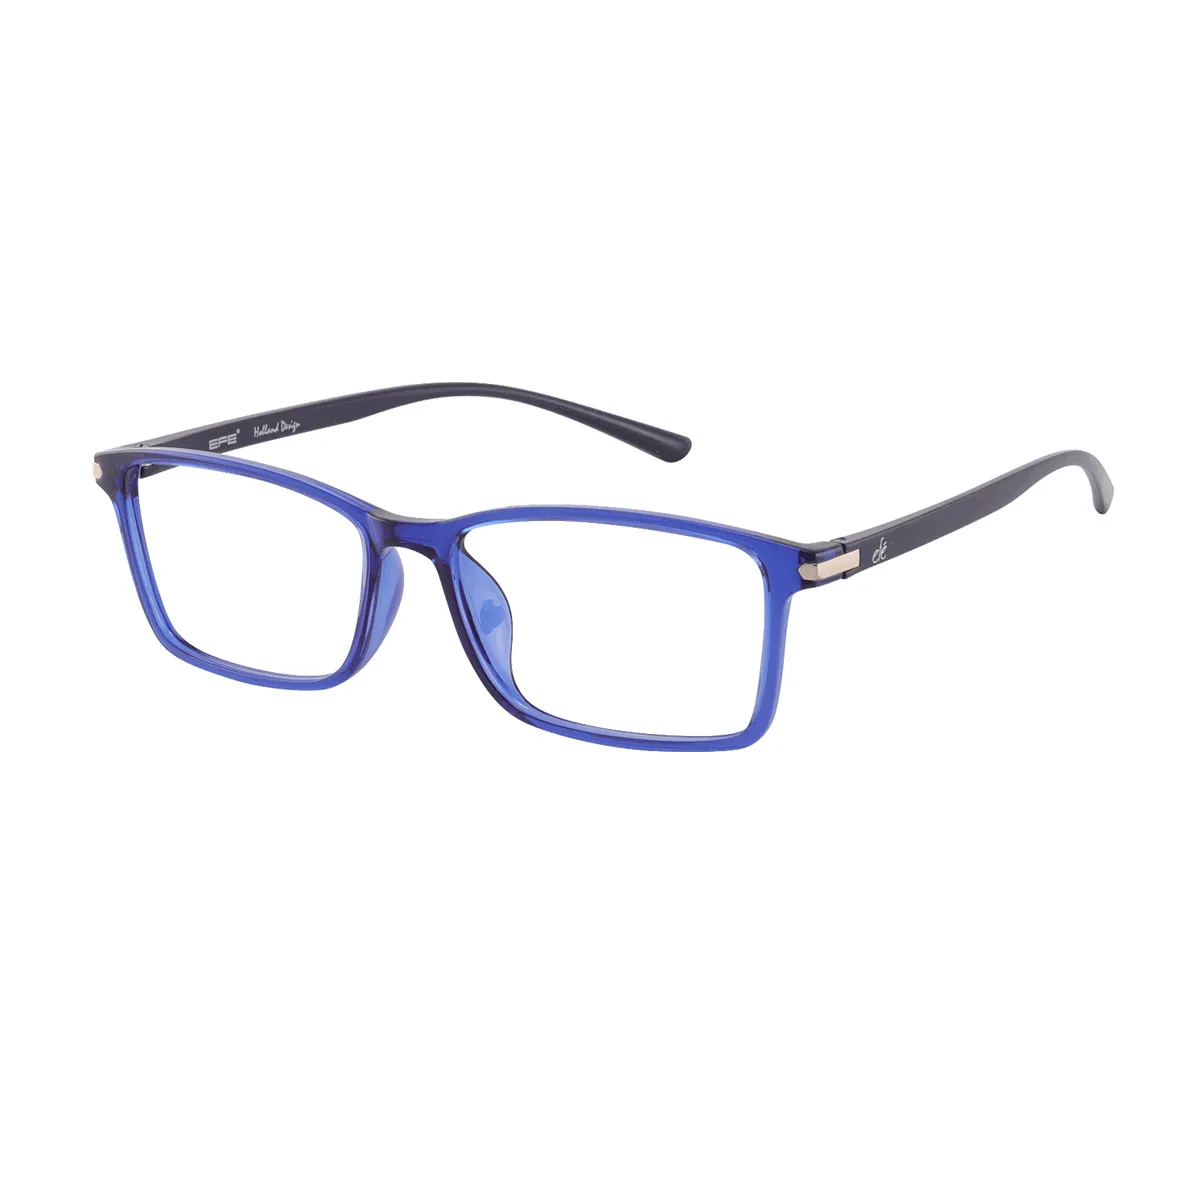 Agiss - Rectangle Blue Glasses for Men & Women